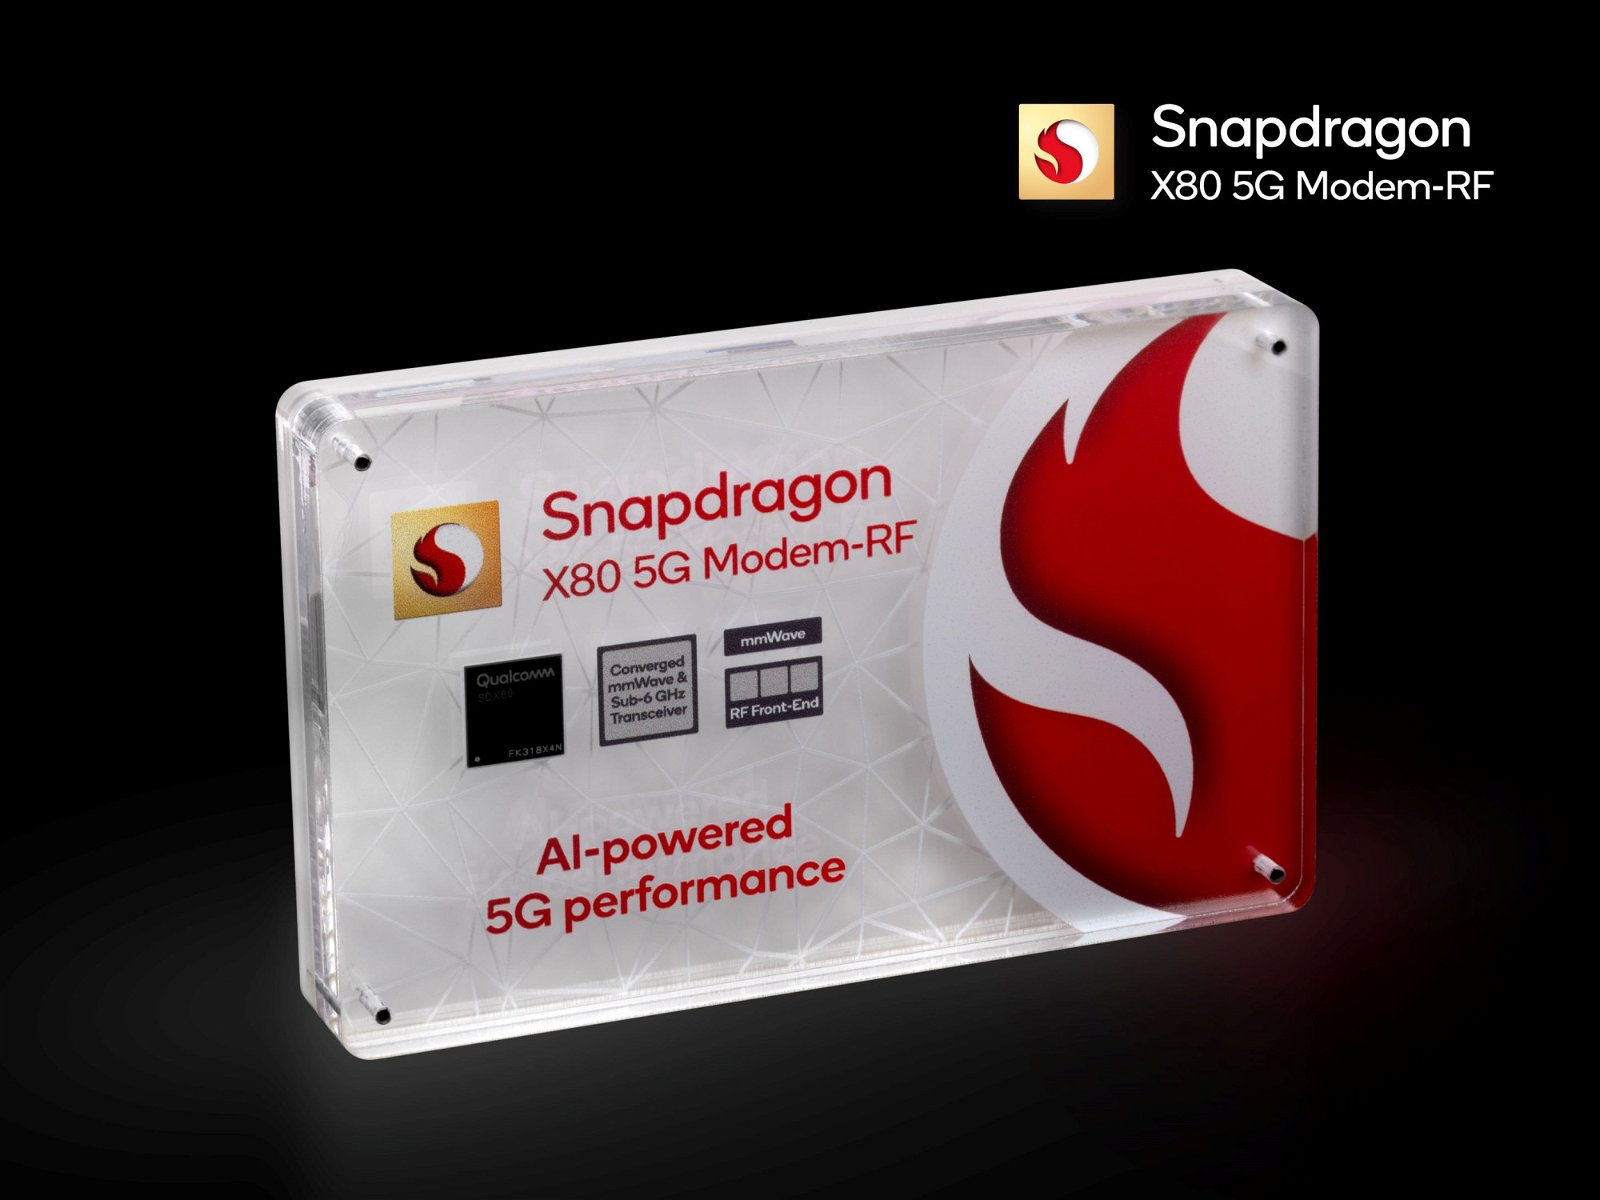 Immagine di Qualcomm Snapdragon X80, tutte le novità tra connettività satellitare e 5G-Advanced